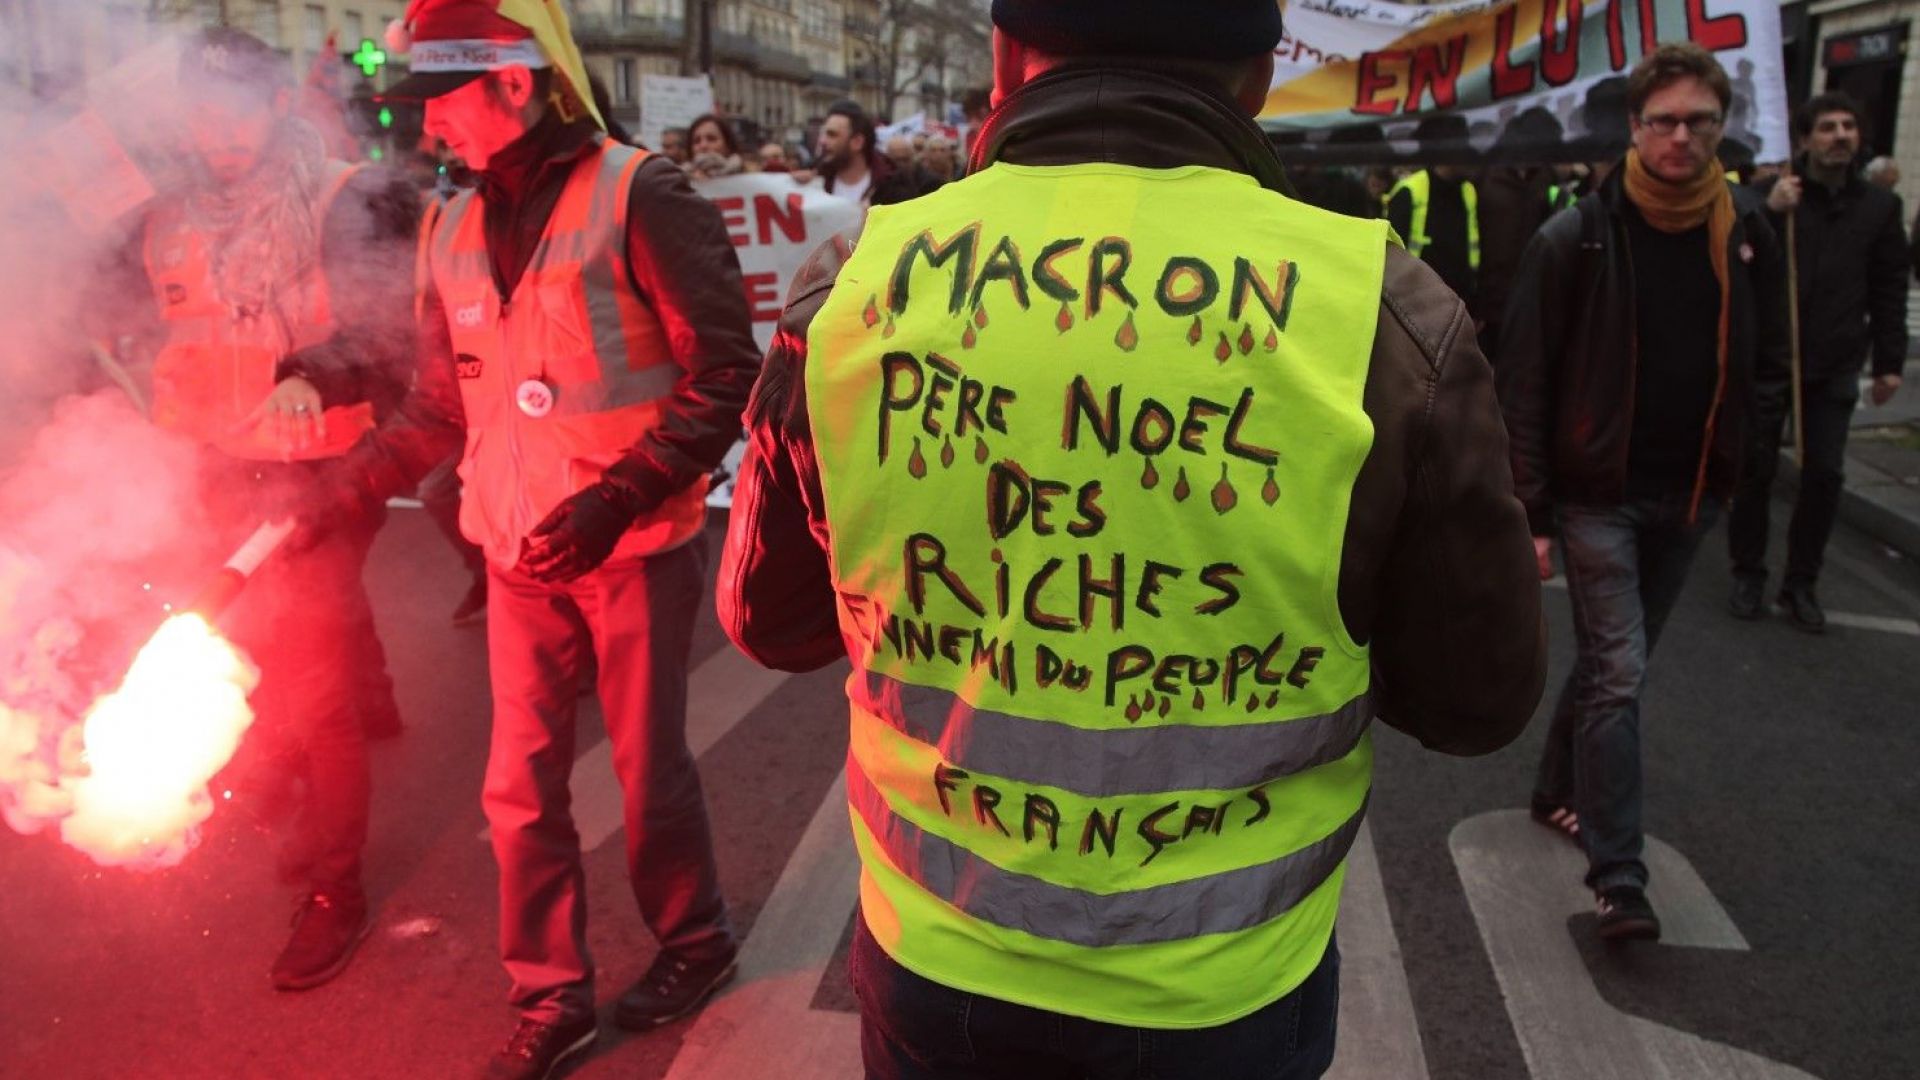 Макрон се отказа от пенсията си (€6220) и поиска от нацията примирие